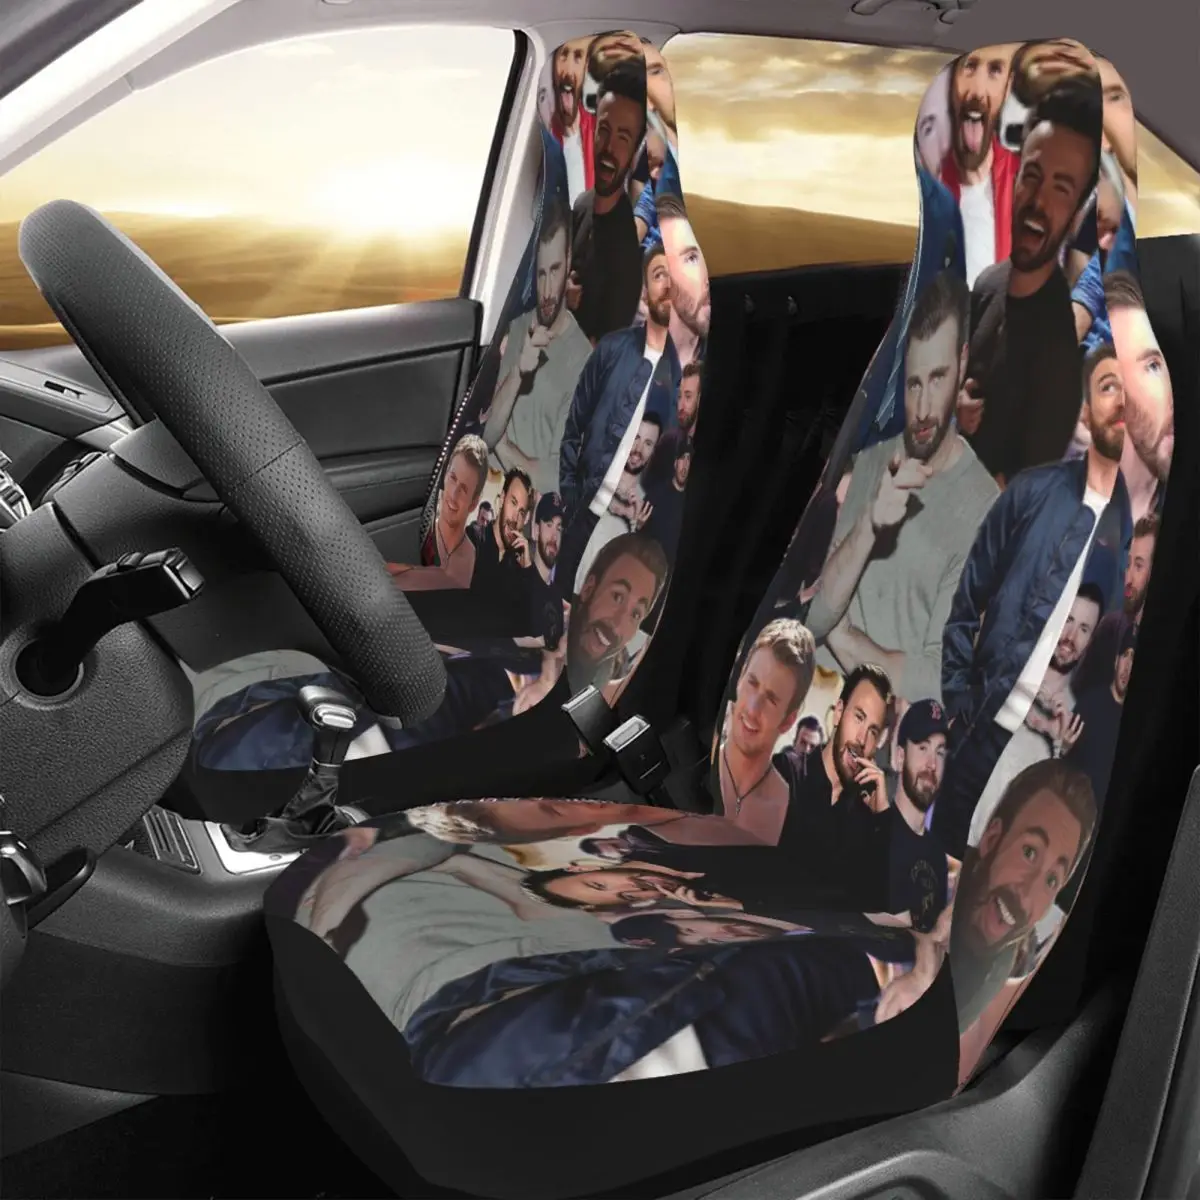 

Чехол на сиденье автомобиля с принтом Криса Эванса (дизайн коллажа)